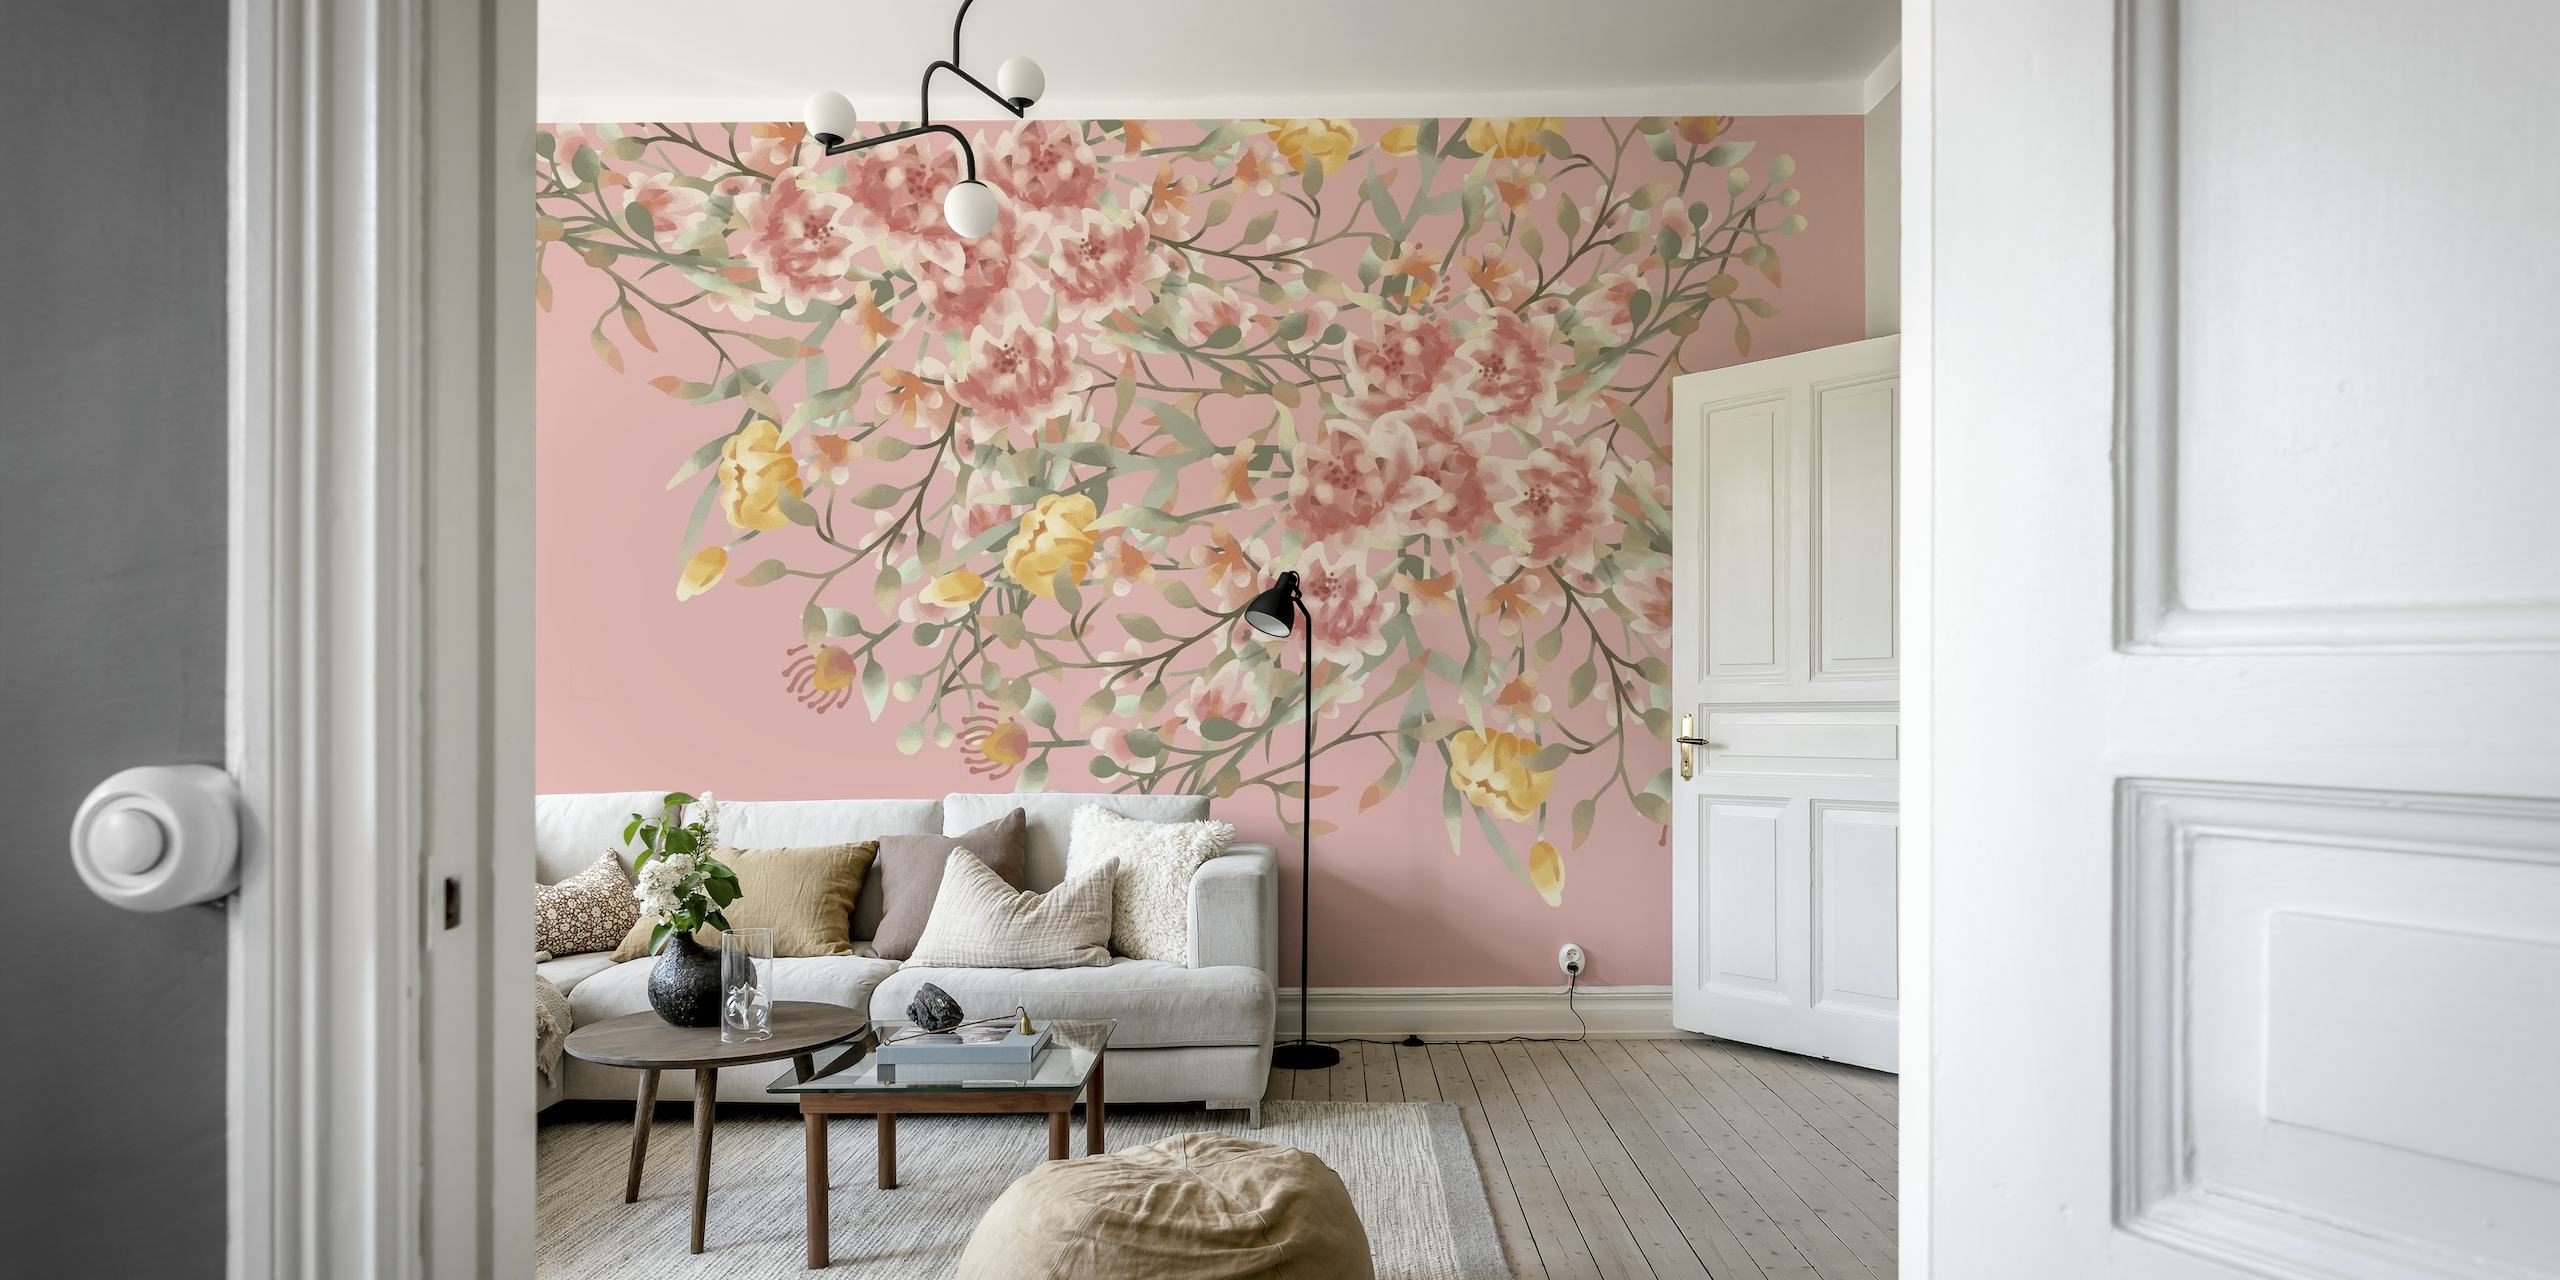 Flores silvestres de acuarela en rosas suaves y tonos tierra en un mural de pared